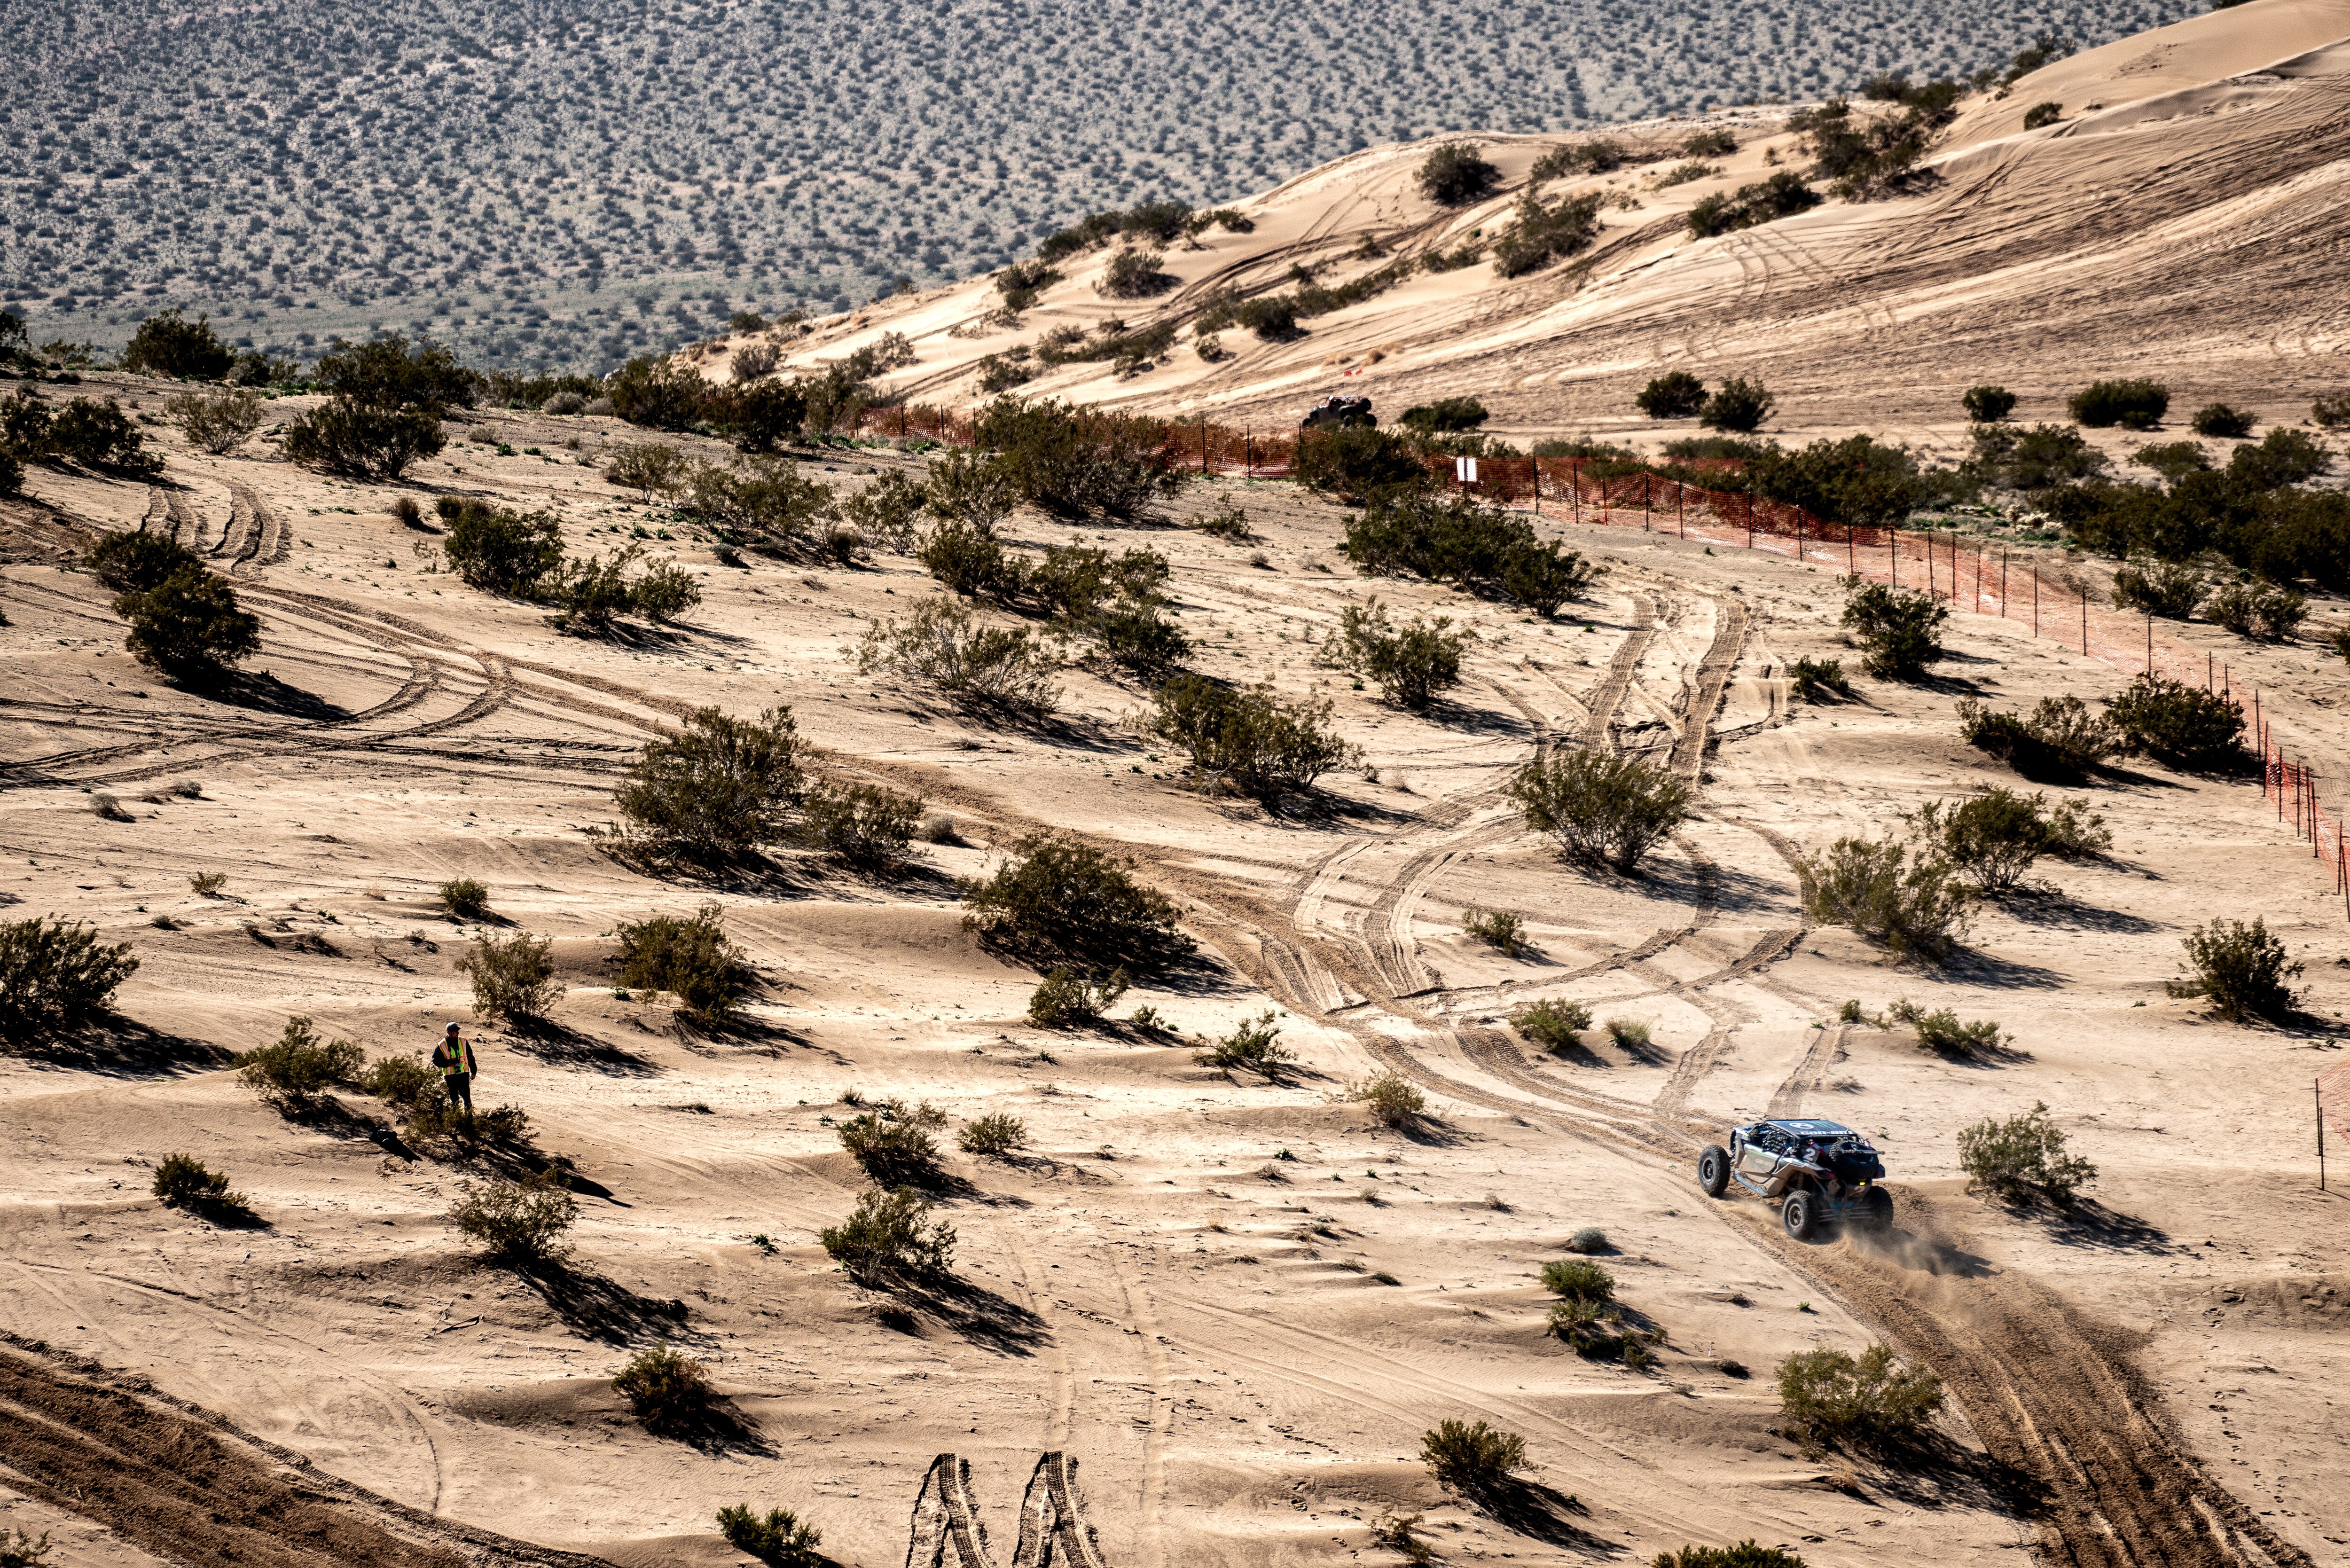 Course de véhicules dans le désert